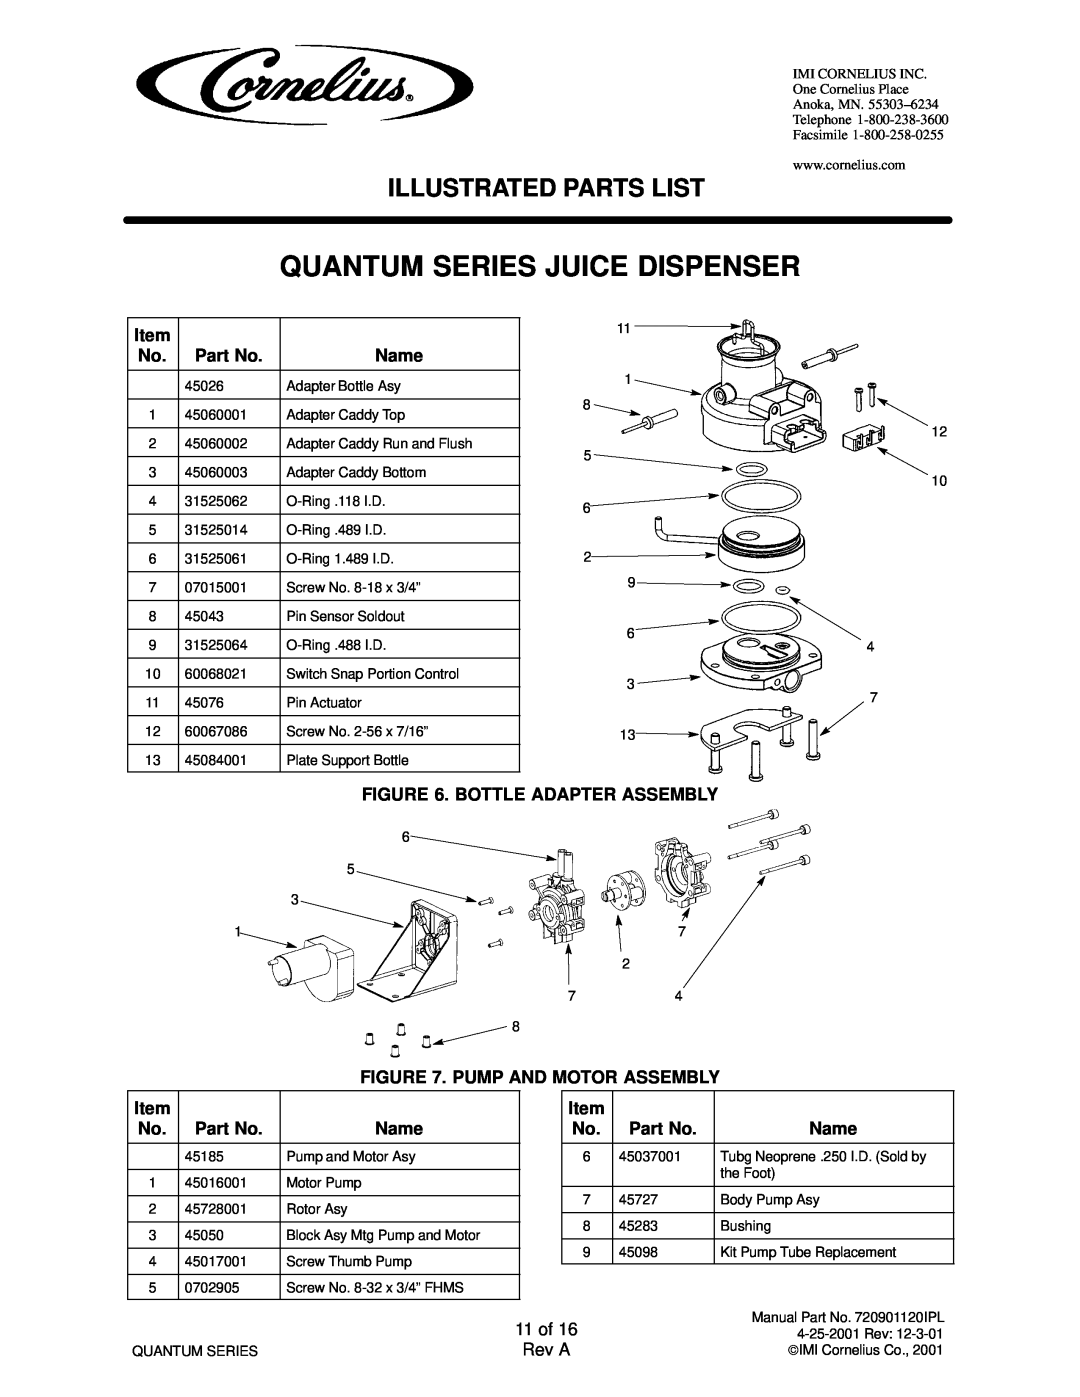 Panasonic 45200003, 45200103, 45400002, 45200004, 45200002, 45200101 Quantum Series Juice Dispenser, Illustrated Parts List 